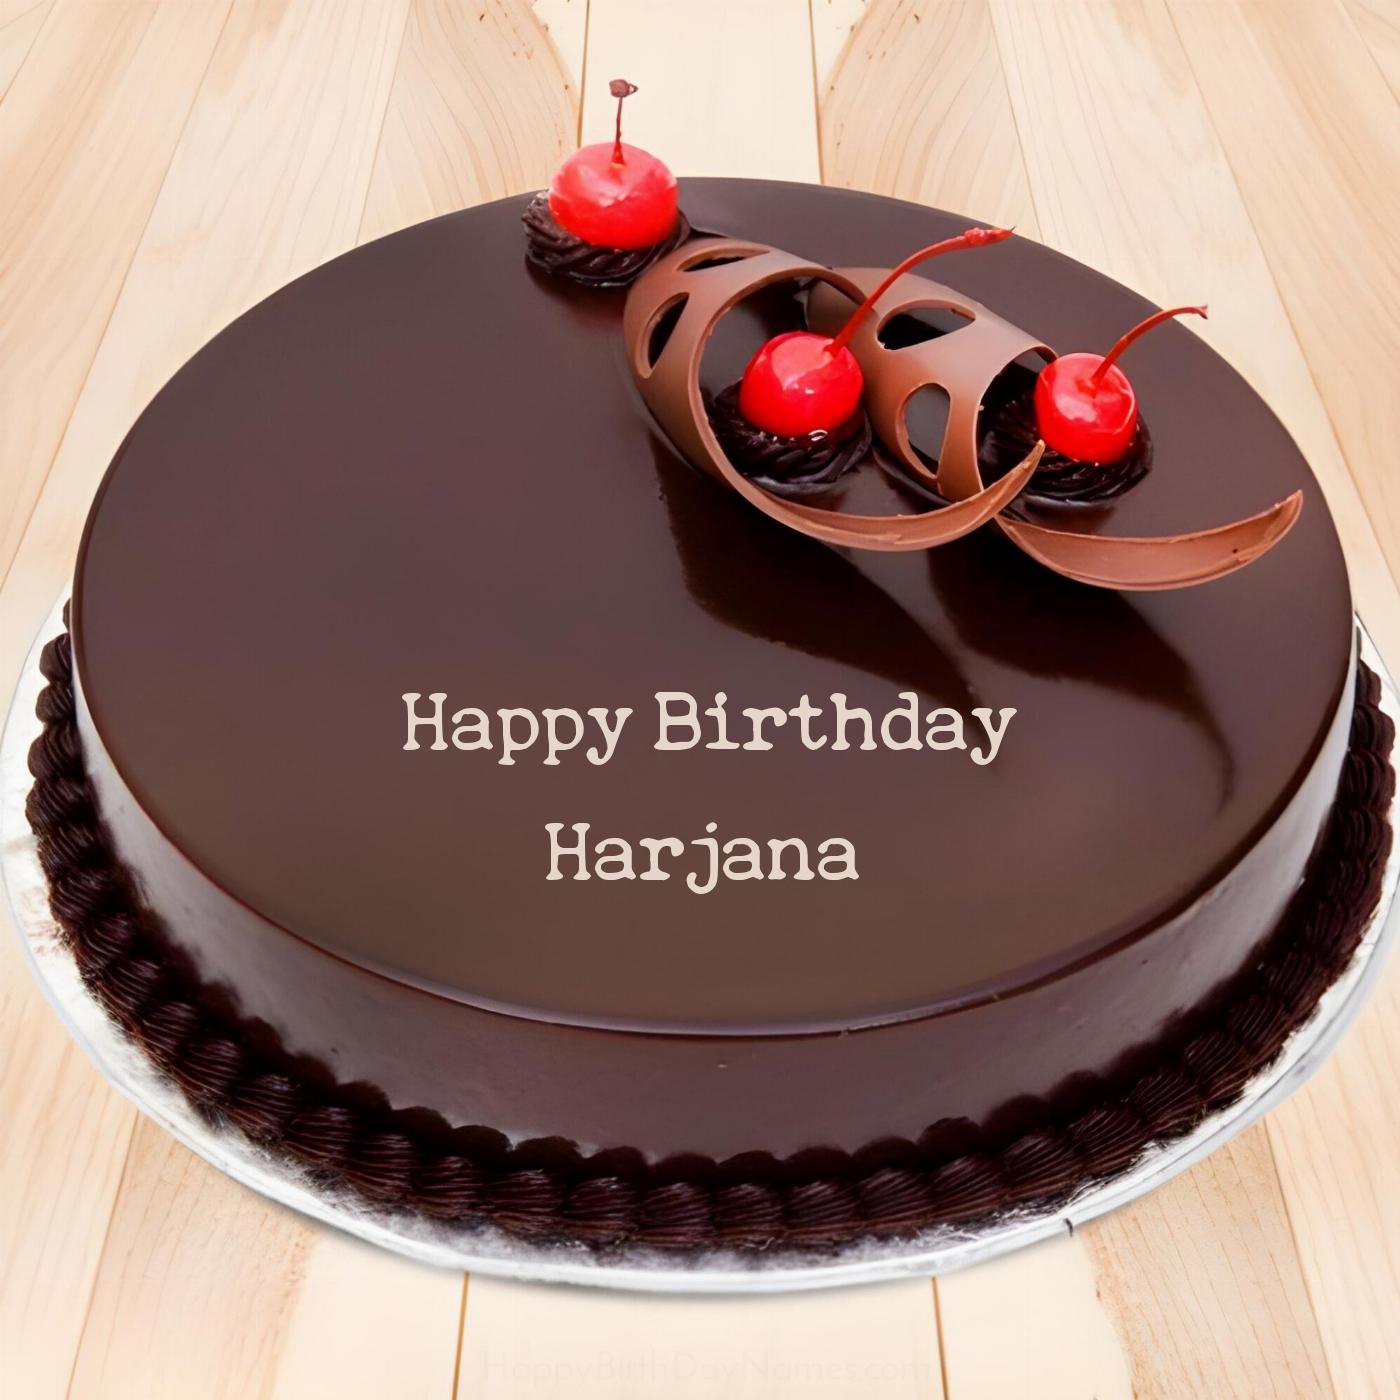 Happy Birthday Harjana Chocolate Cherry Cake